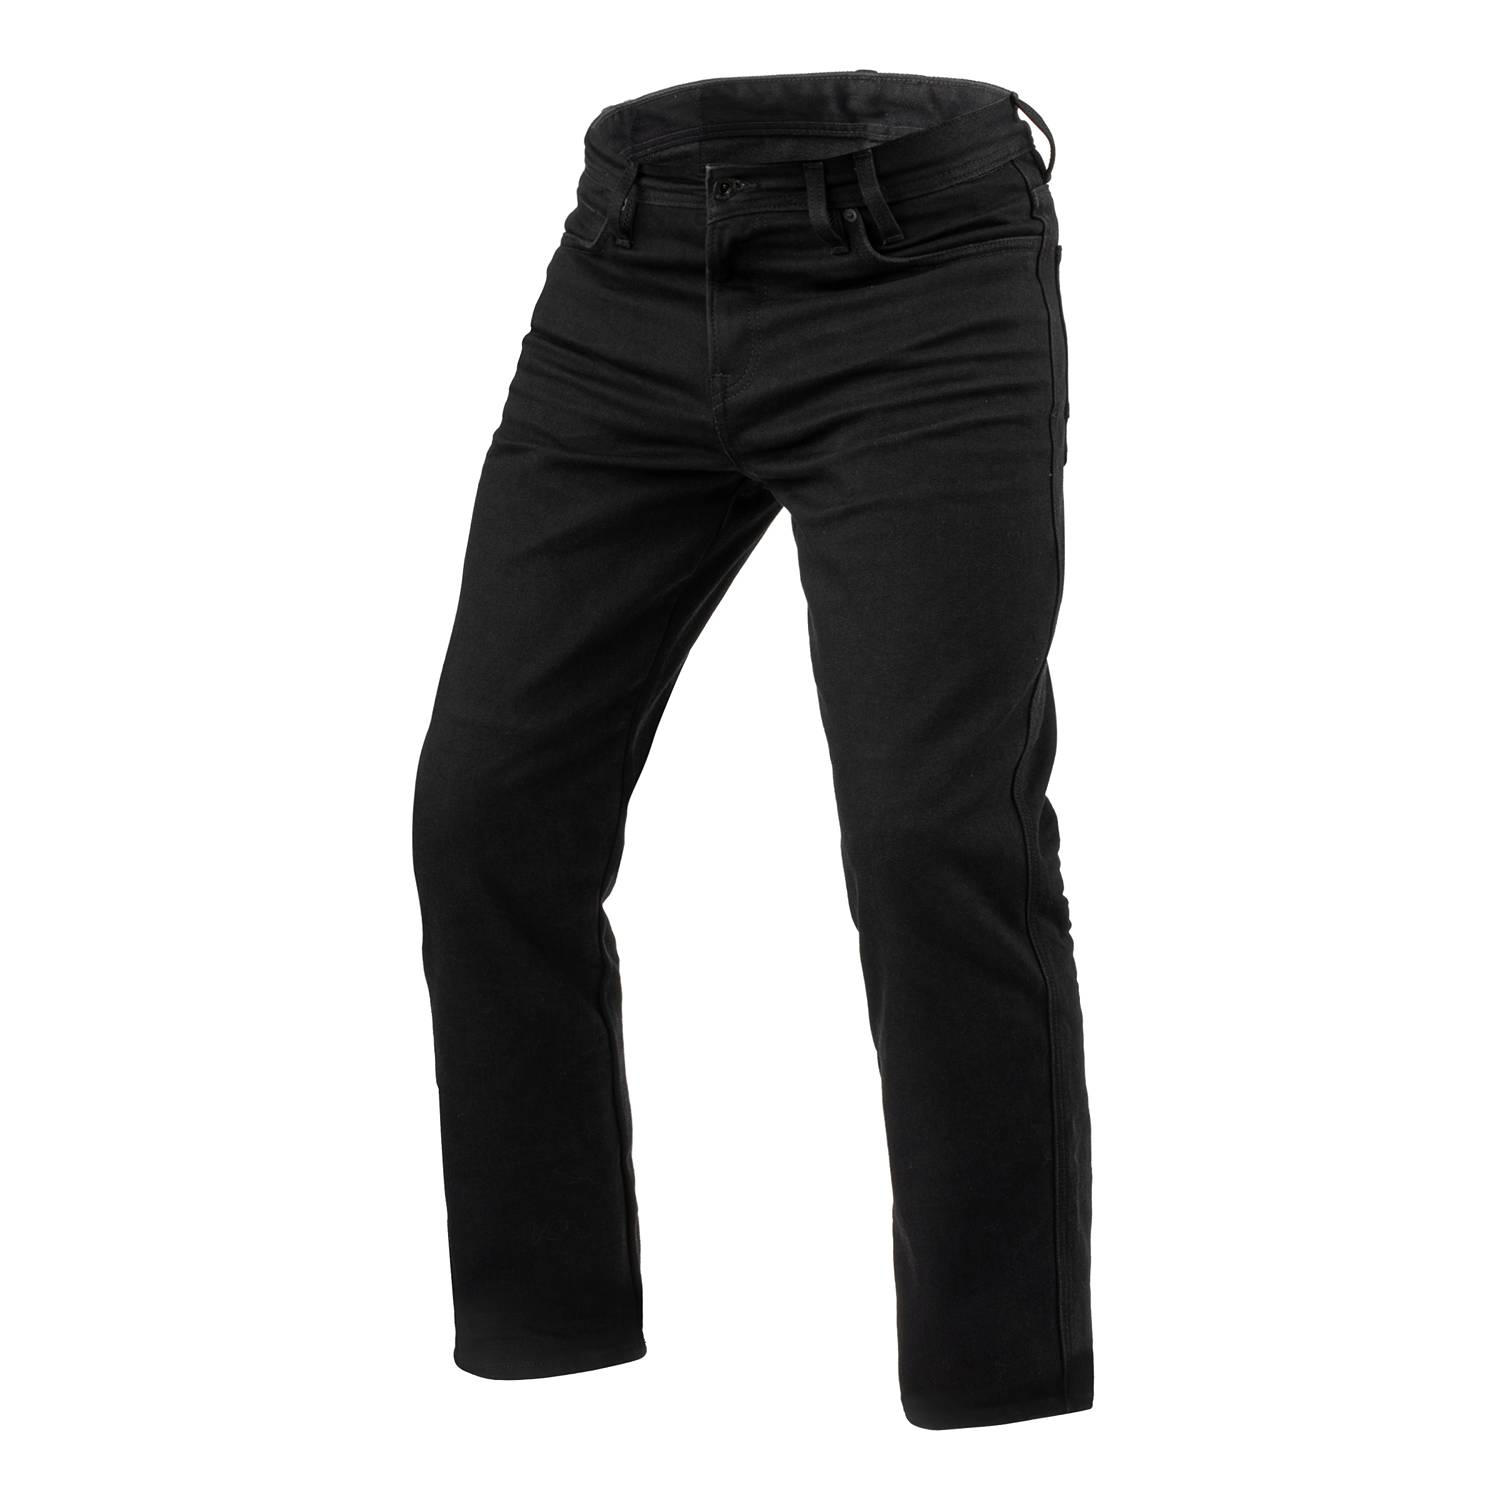 Image of REV'IT! Jeans Lombard 3 RF Black L36 Motorcycle Jeans Size L36/W33 EN